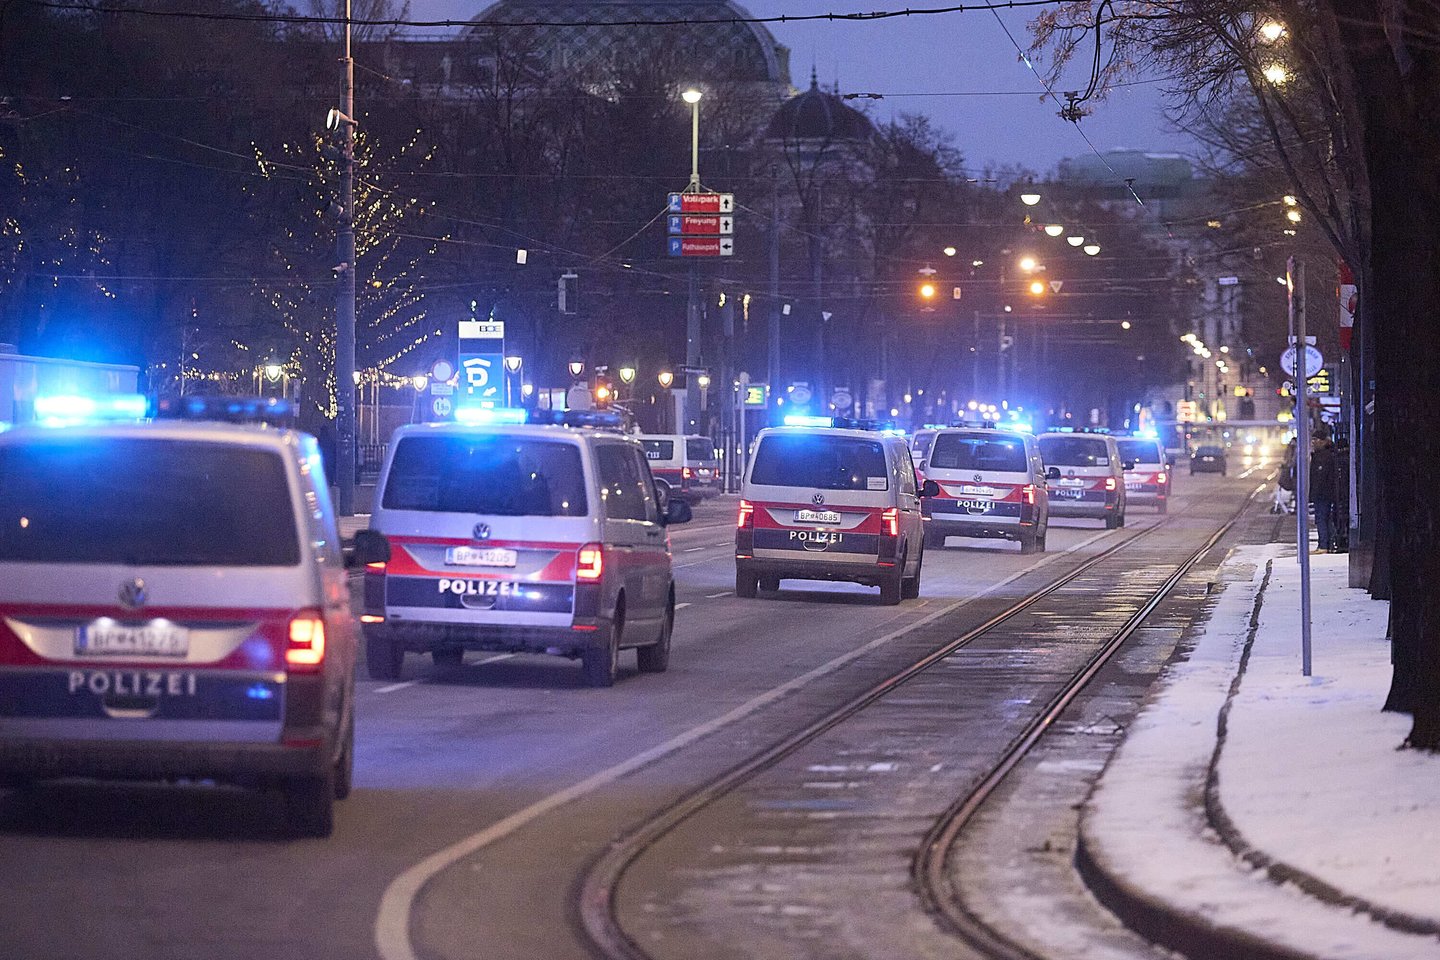  Vieno vyro Austrijos sostinėje kaimynai dar praėjusių metų lapkritį pranešė policijai apie jo mirtį, tačiau sausio pabaigoje išsiaiškino, kad niekas taip ir neatvyko paimti pūvančio lavono.<br> Imago/Scanpix nuotr.